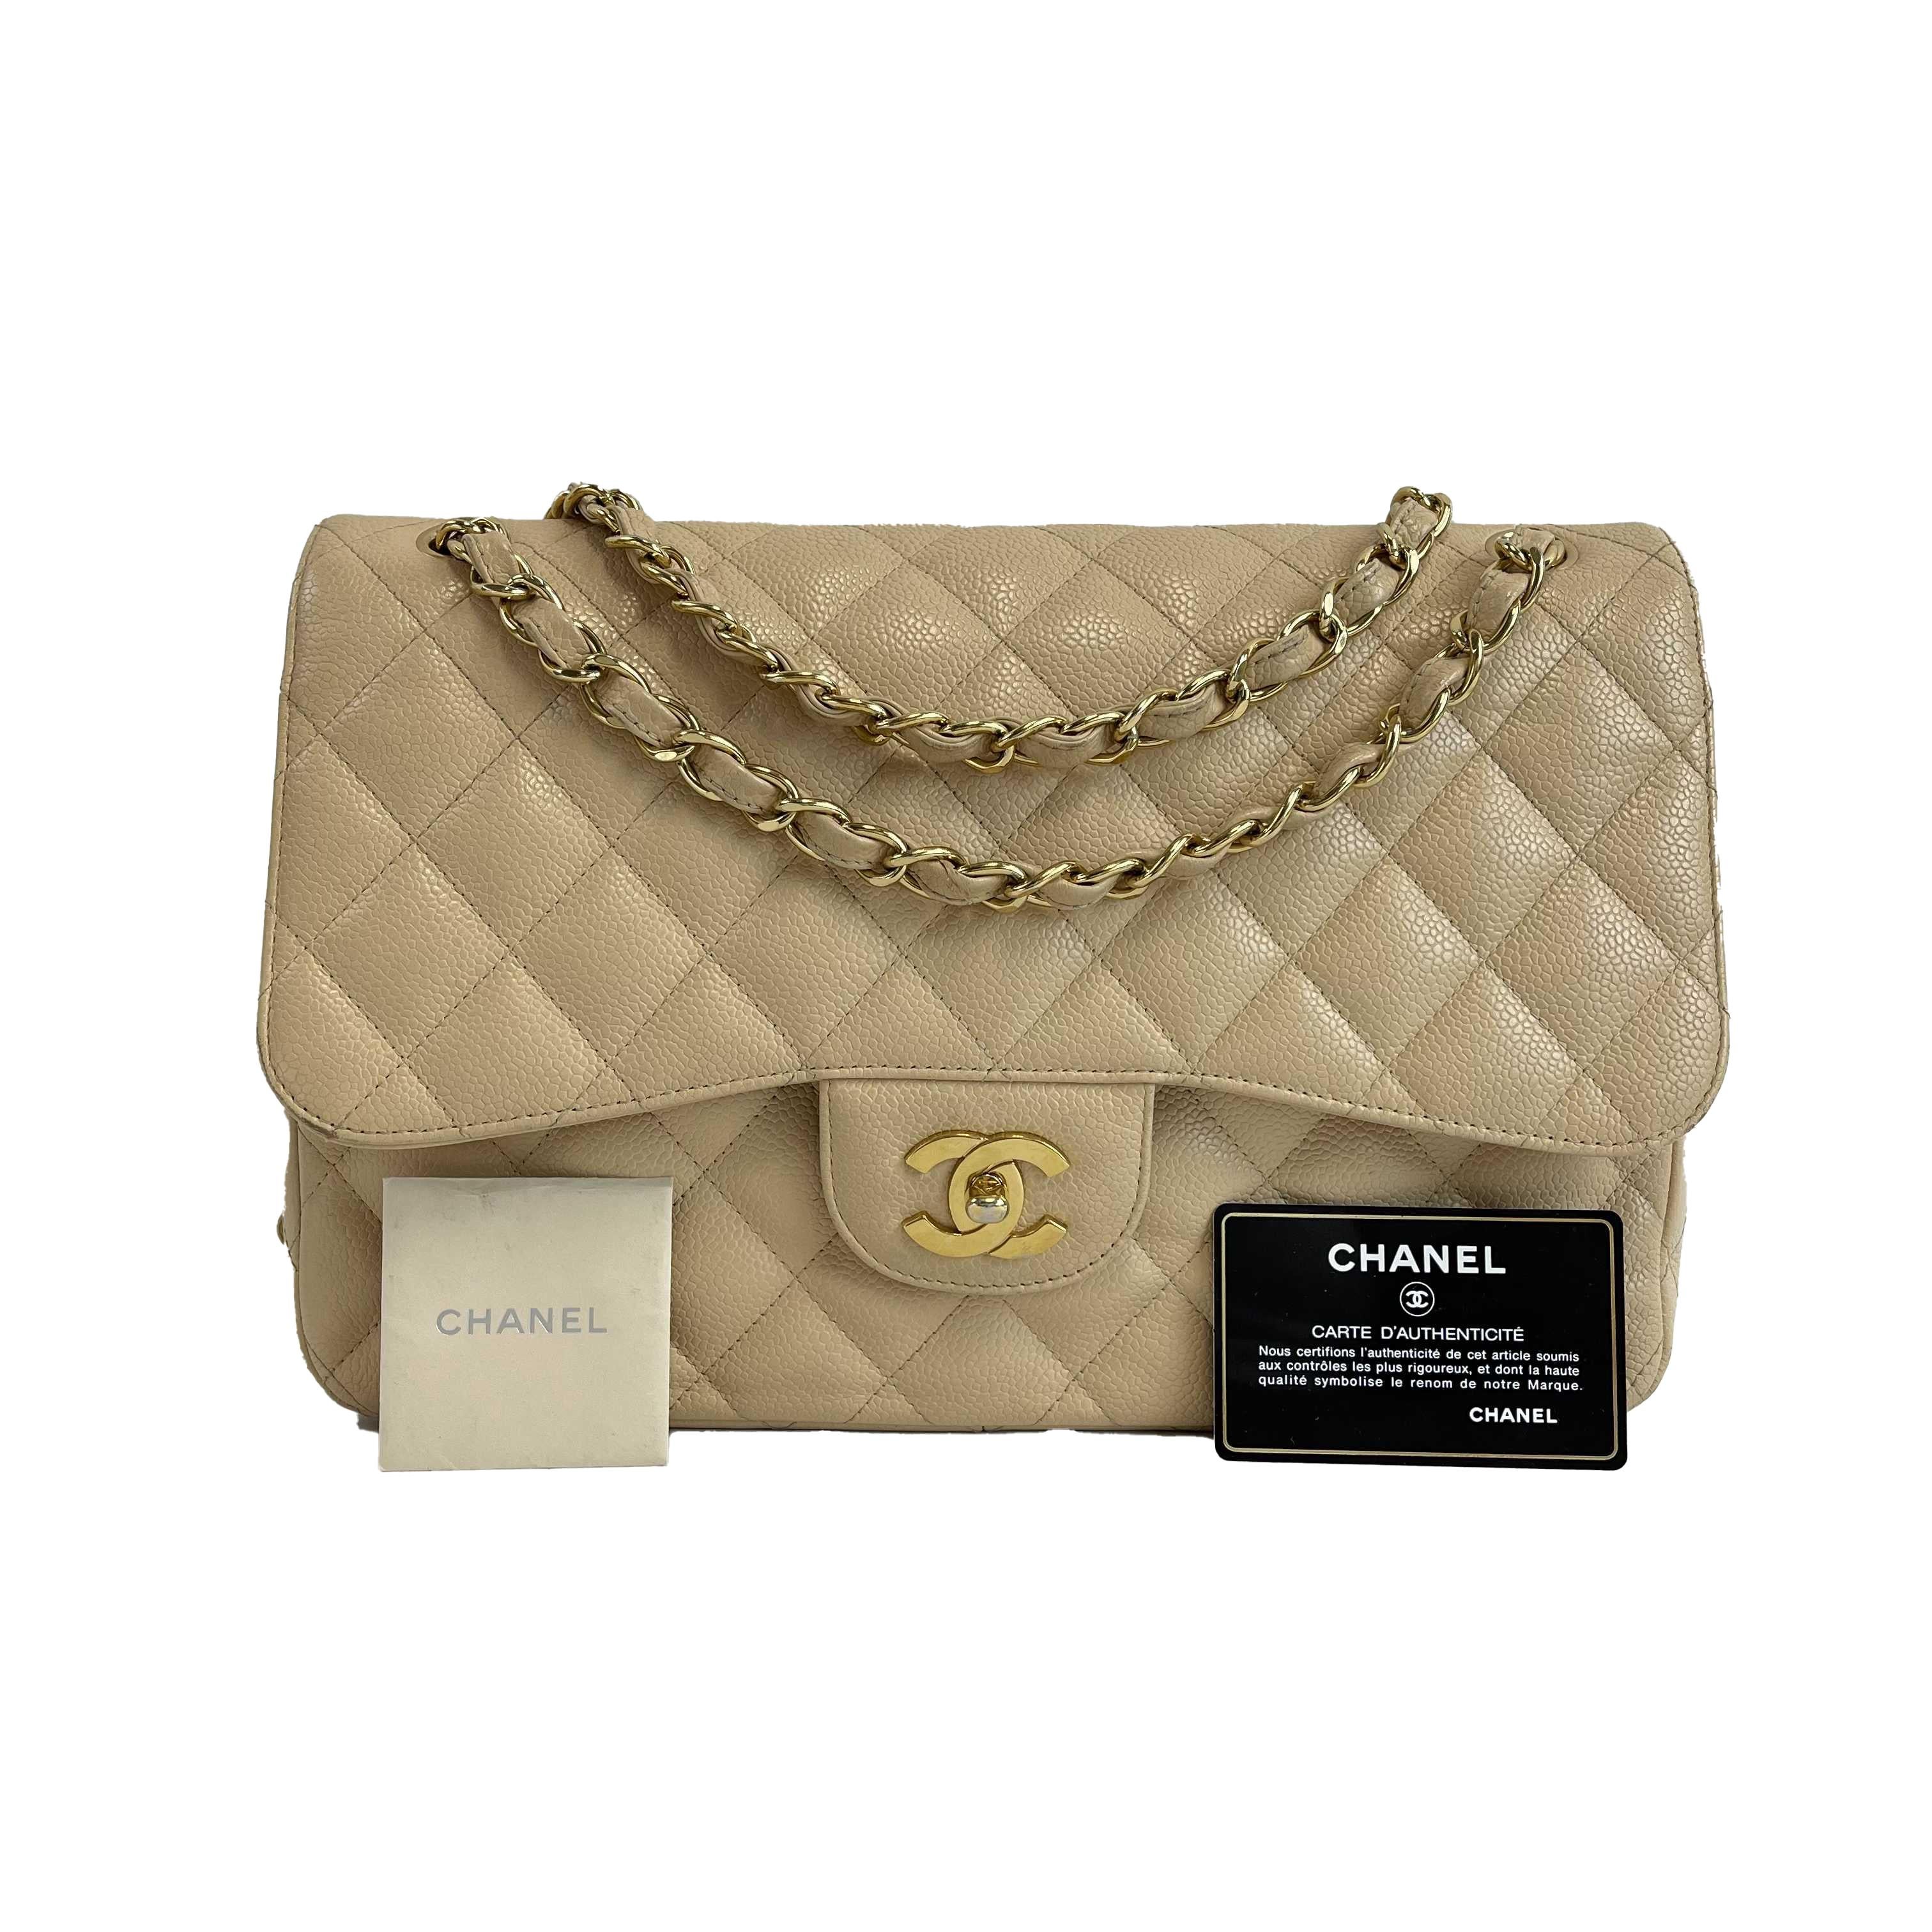 CHANEL - Large CC Caviar Leather Double Flap Tan Shoulder Bag For Sale 5